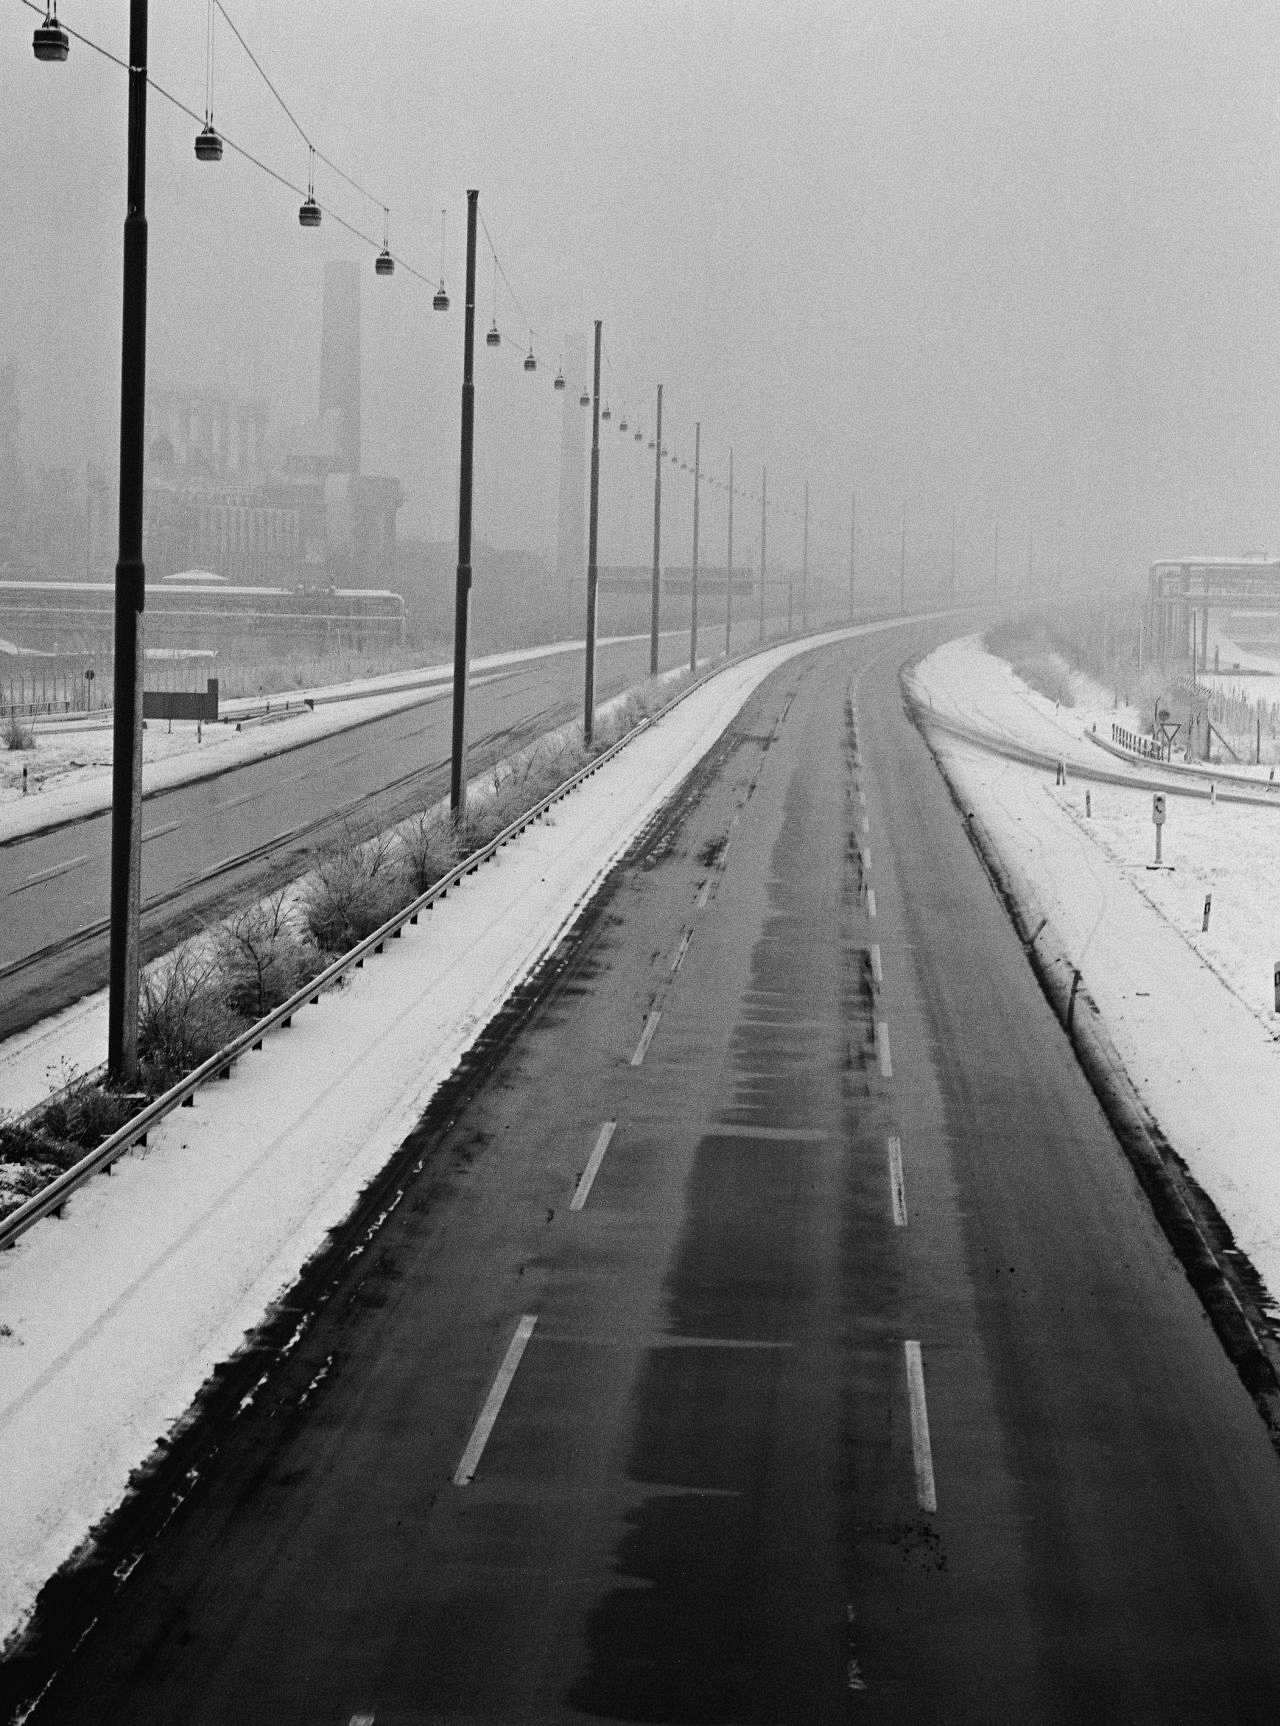 Schwarzweiß-Foto einer autofreien Autobahn. Je Fahrtrichtung drei Spuren. Auffahrt von rechts. Mittel- und Randstreifen sind schneebedeckt. Auf dem Mittelstreifen Straßenlaternen. Hintergrund nebelverhangen. Links neben der Autobahn Industrieanlagen.